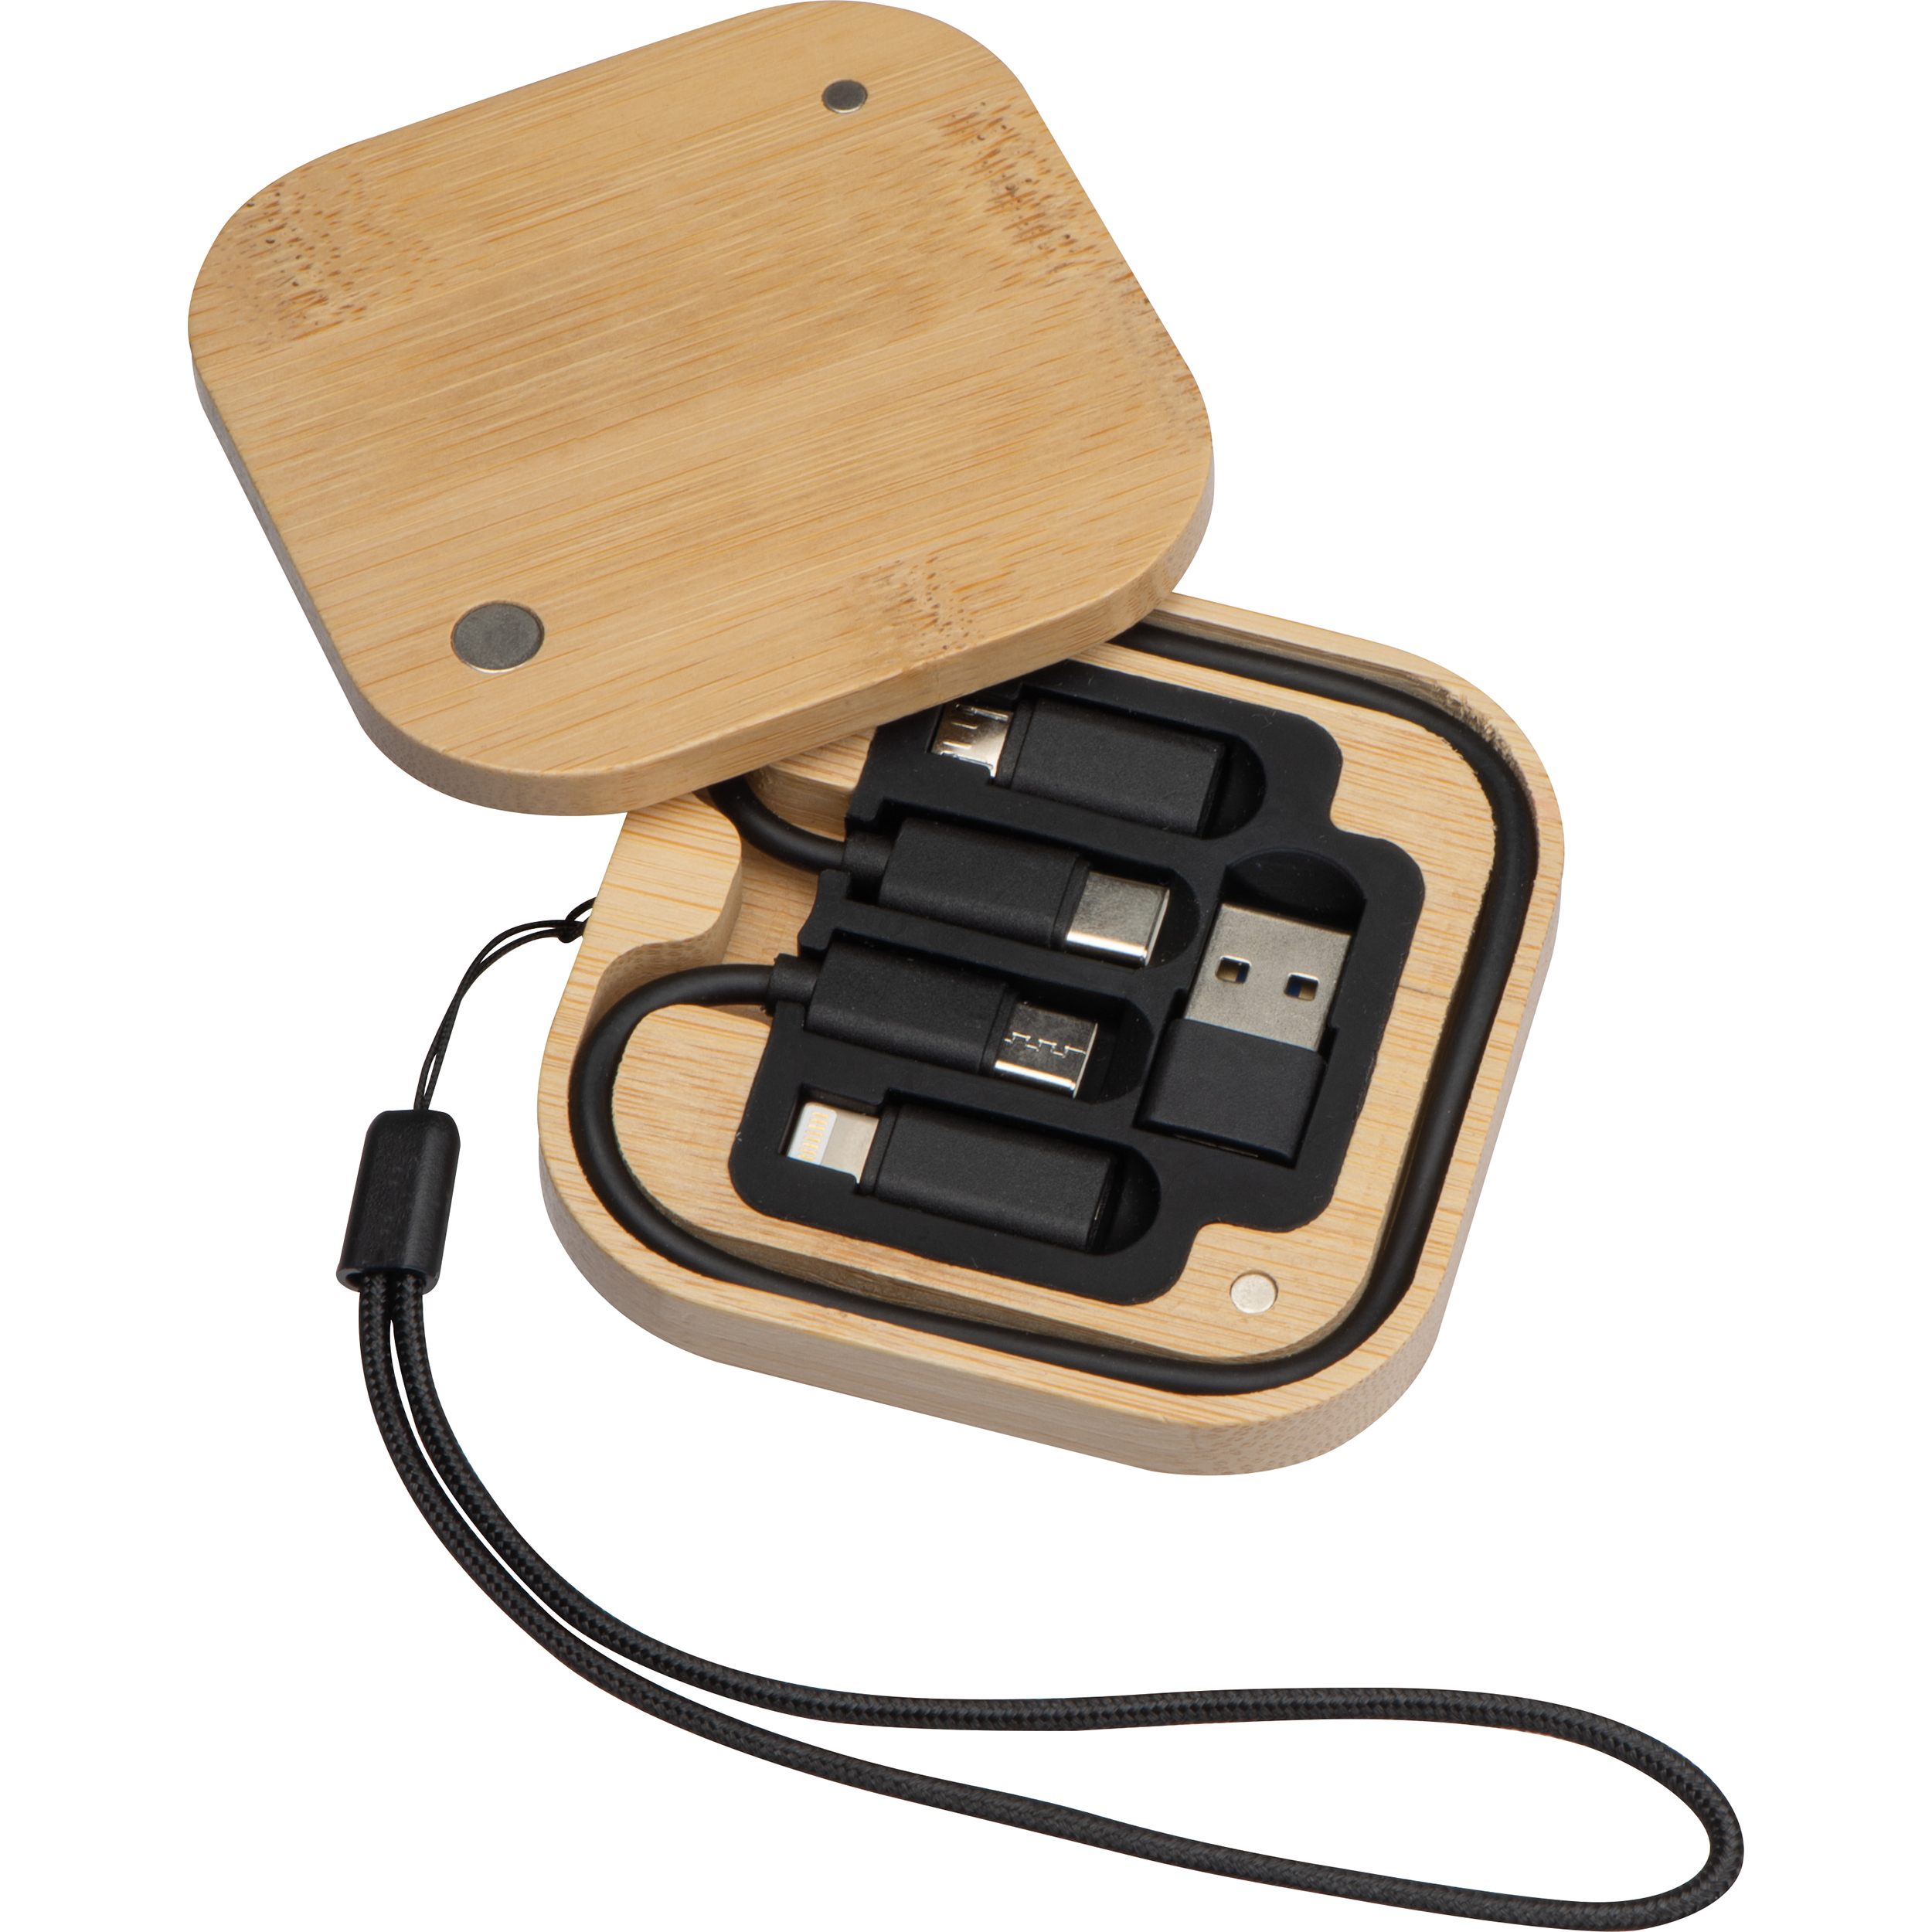 Kabel- und Adapterset in einer Bambusbox